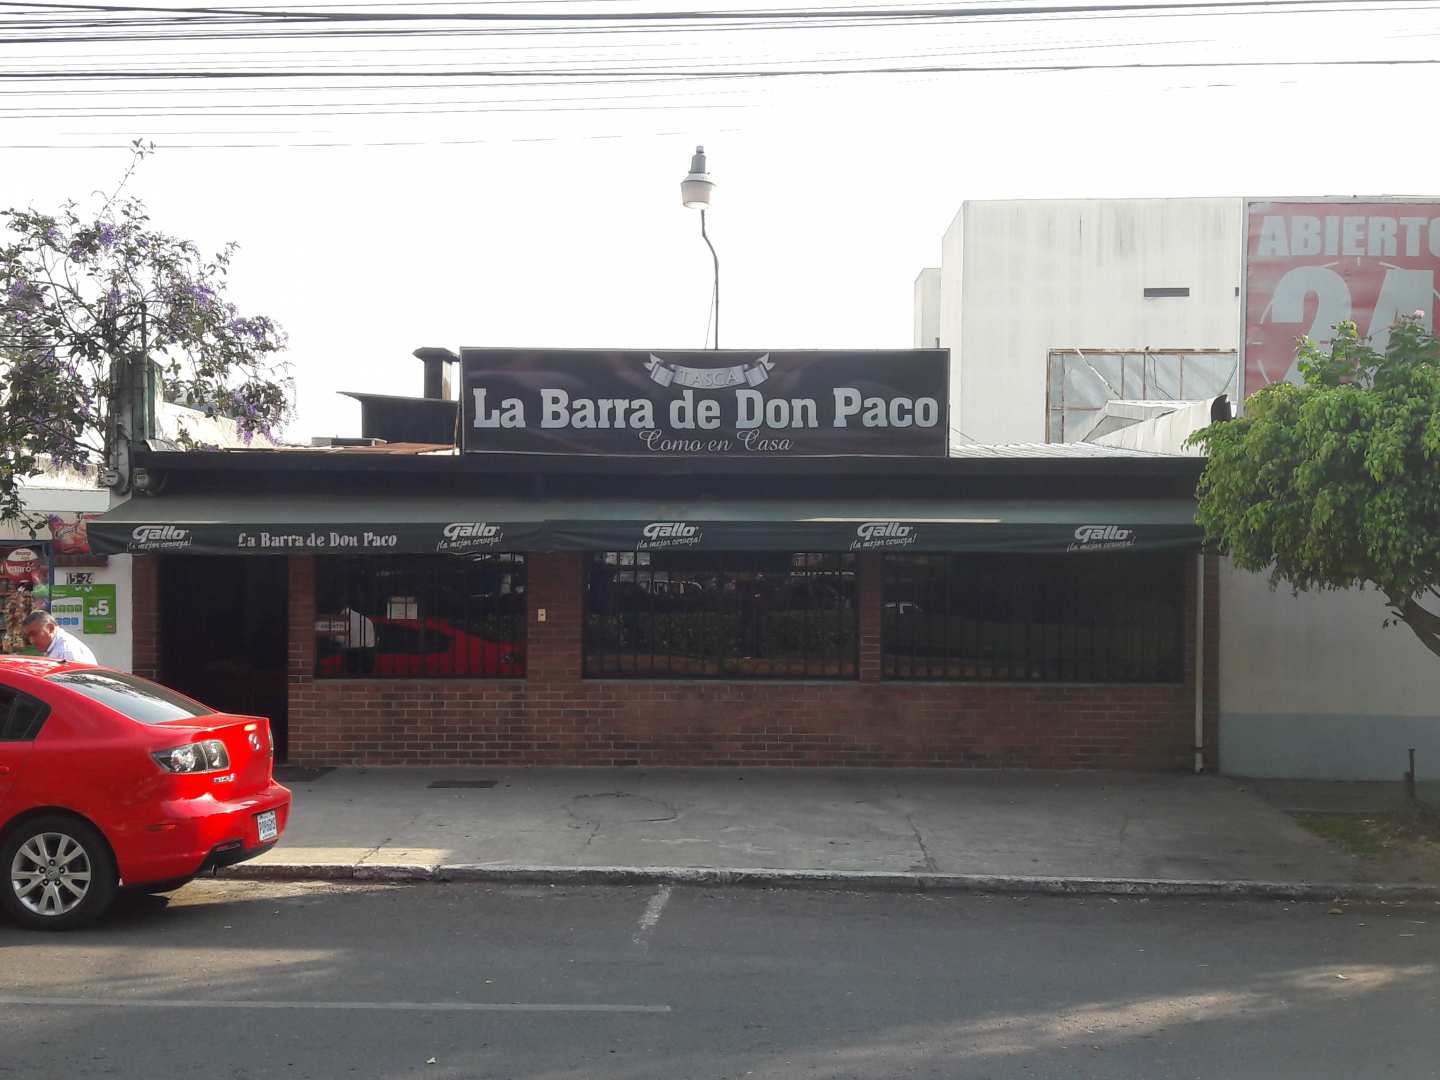 La Barra de Don Paco